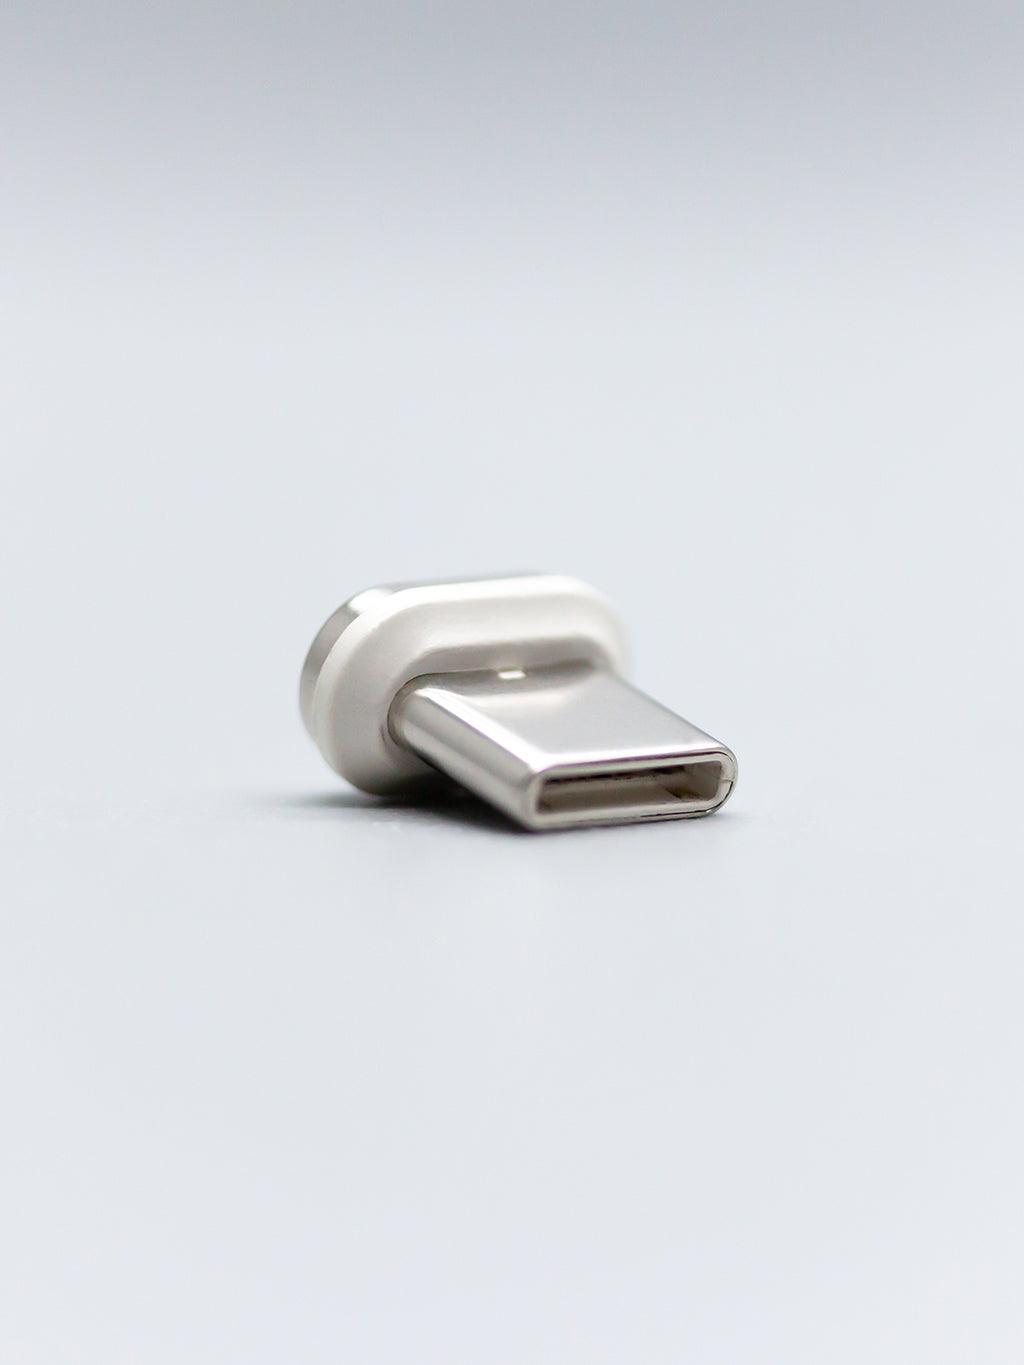 Syllucid Charge: USB C Connector - Syllucid